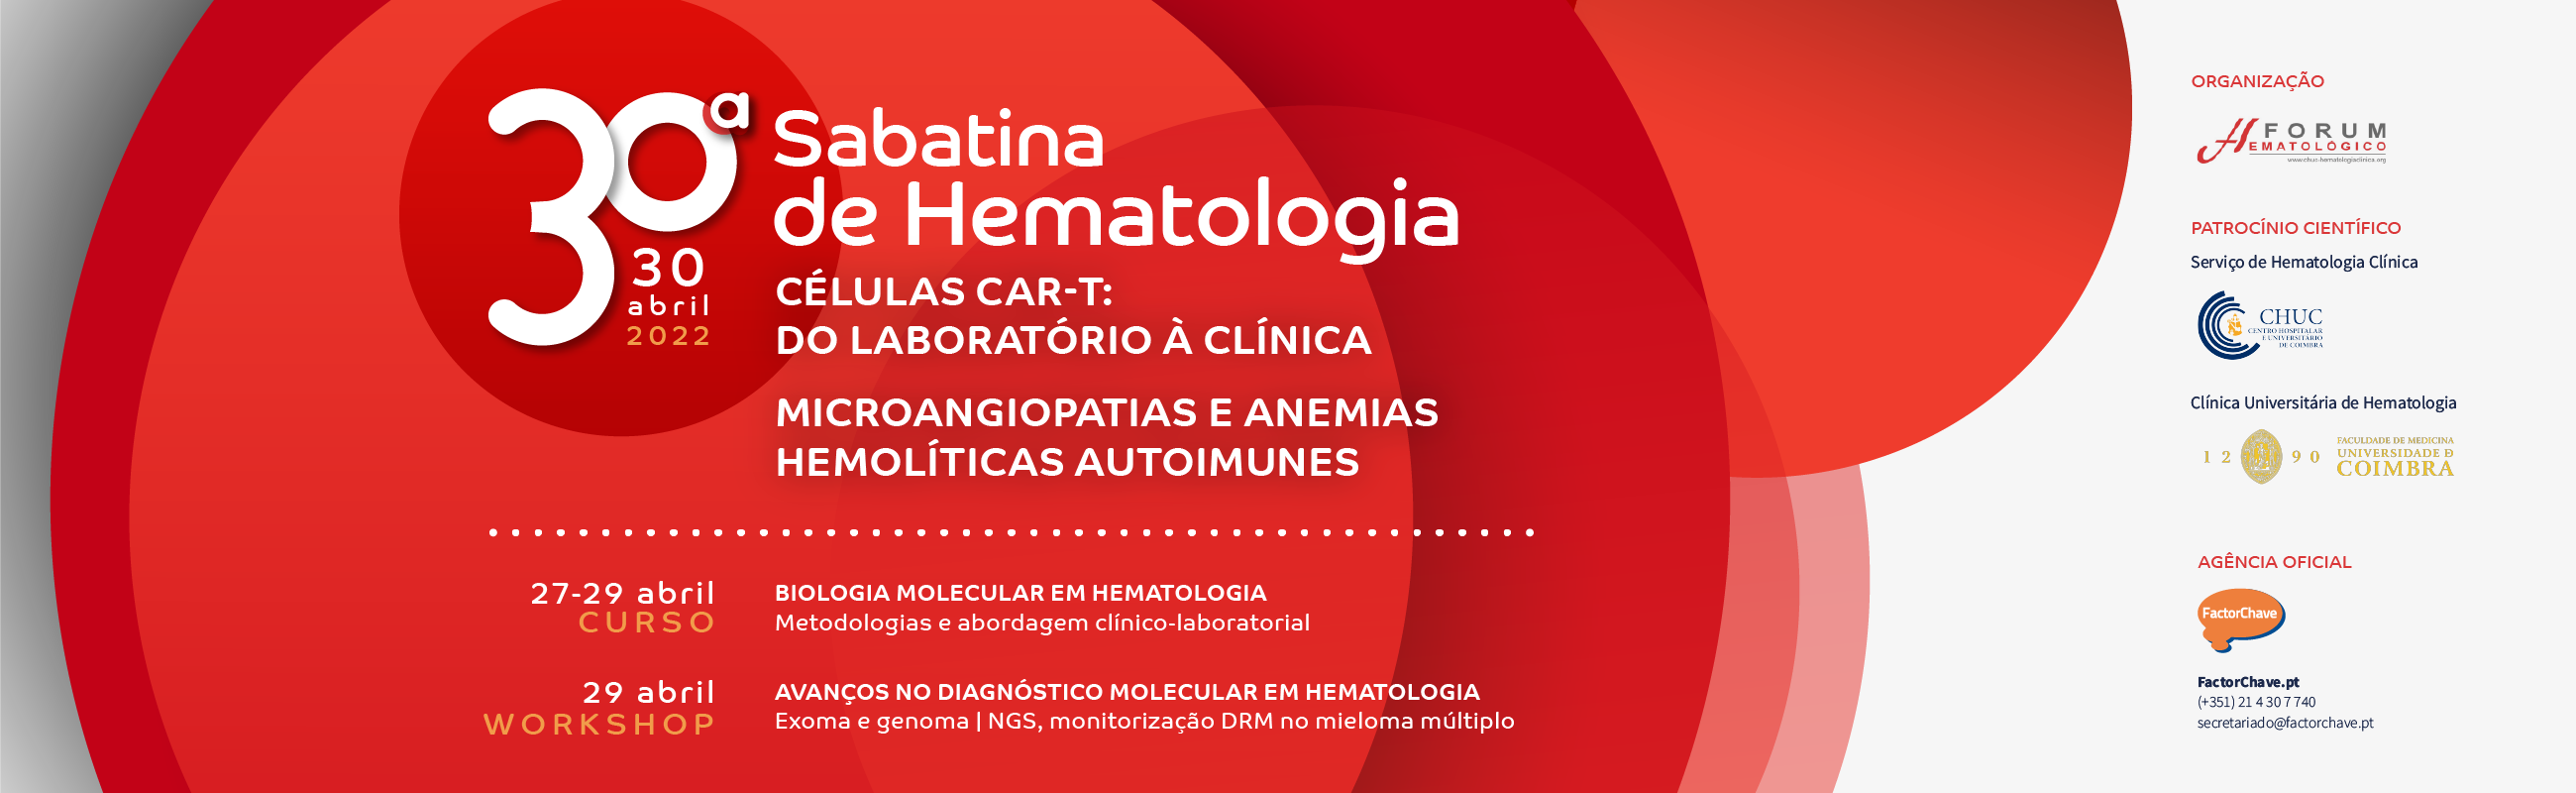 30ª Sabatina de Hematologia, Curso Teórico-Prático e Workshop - actualização 2022